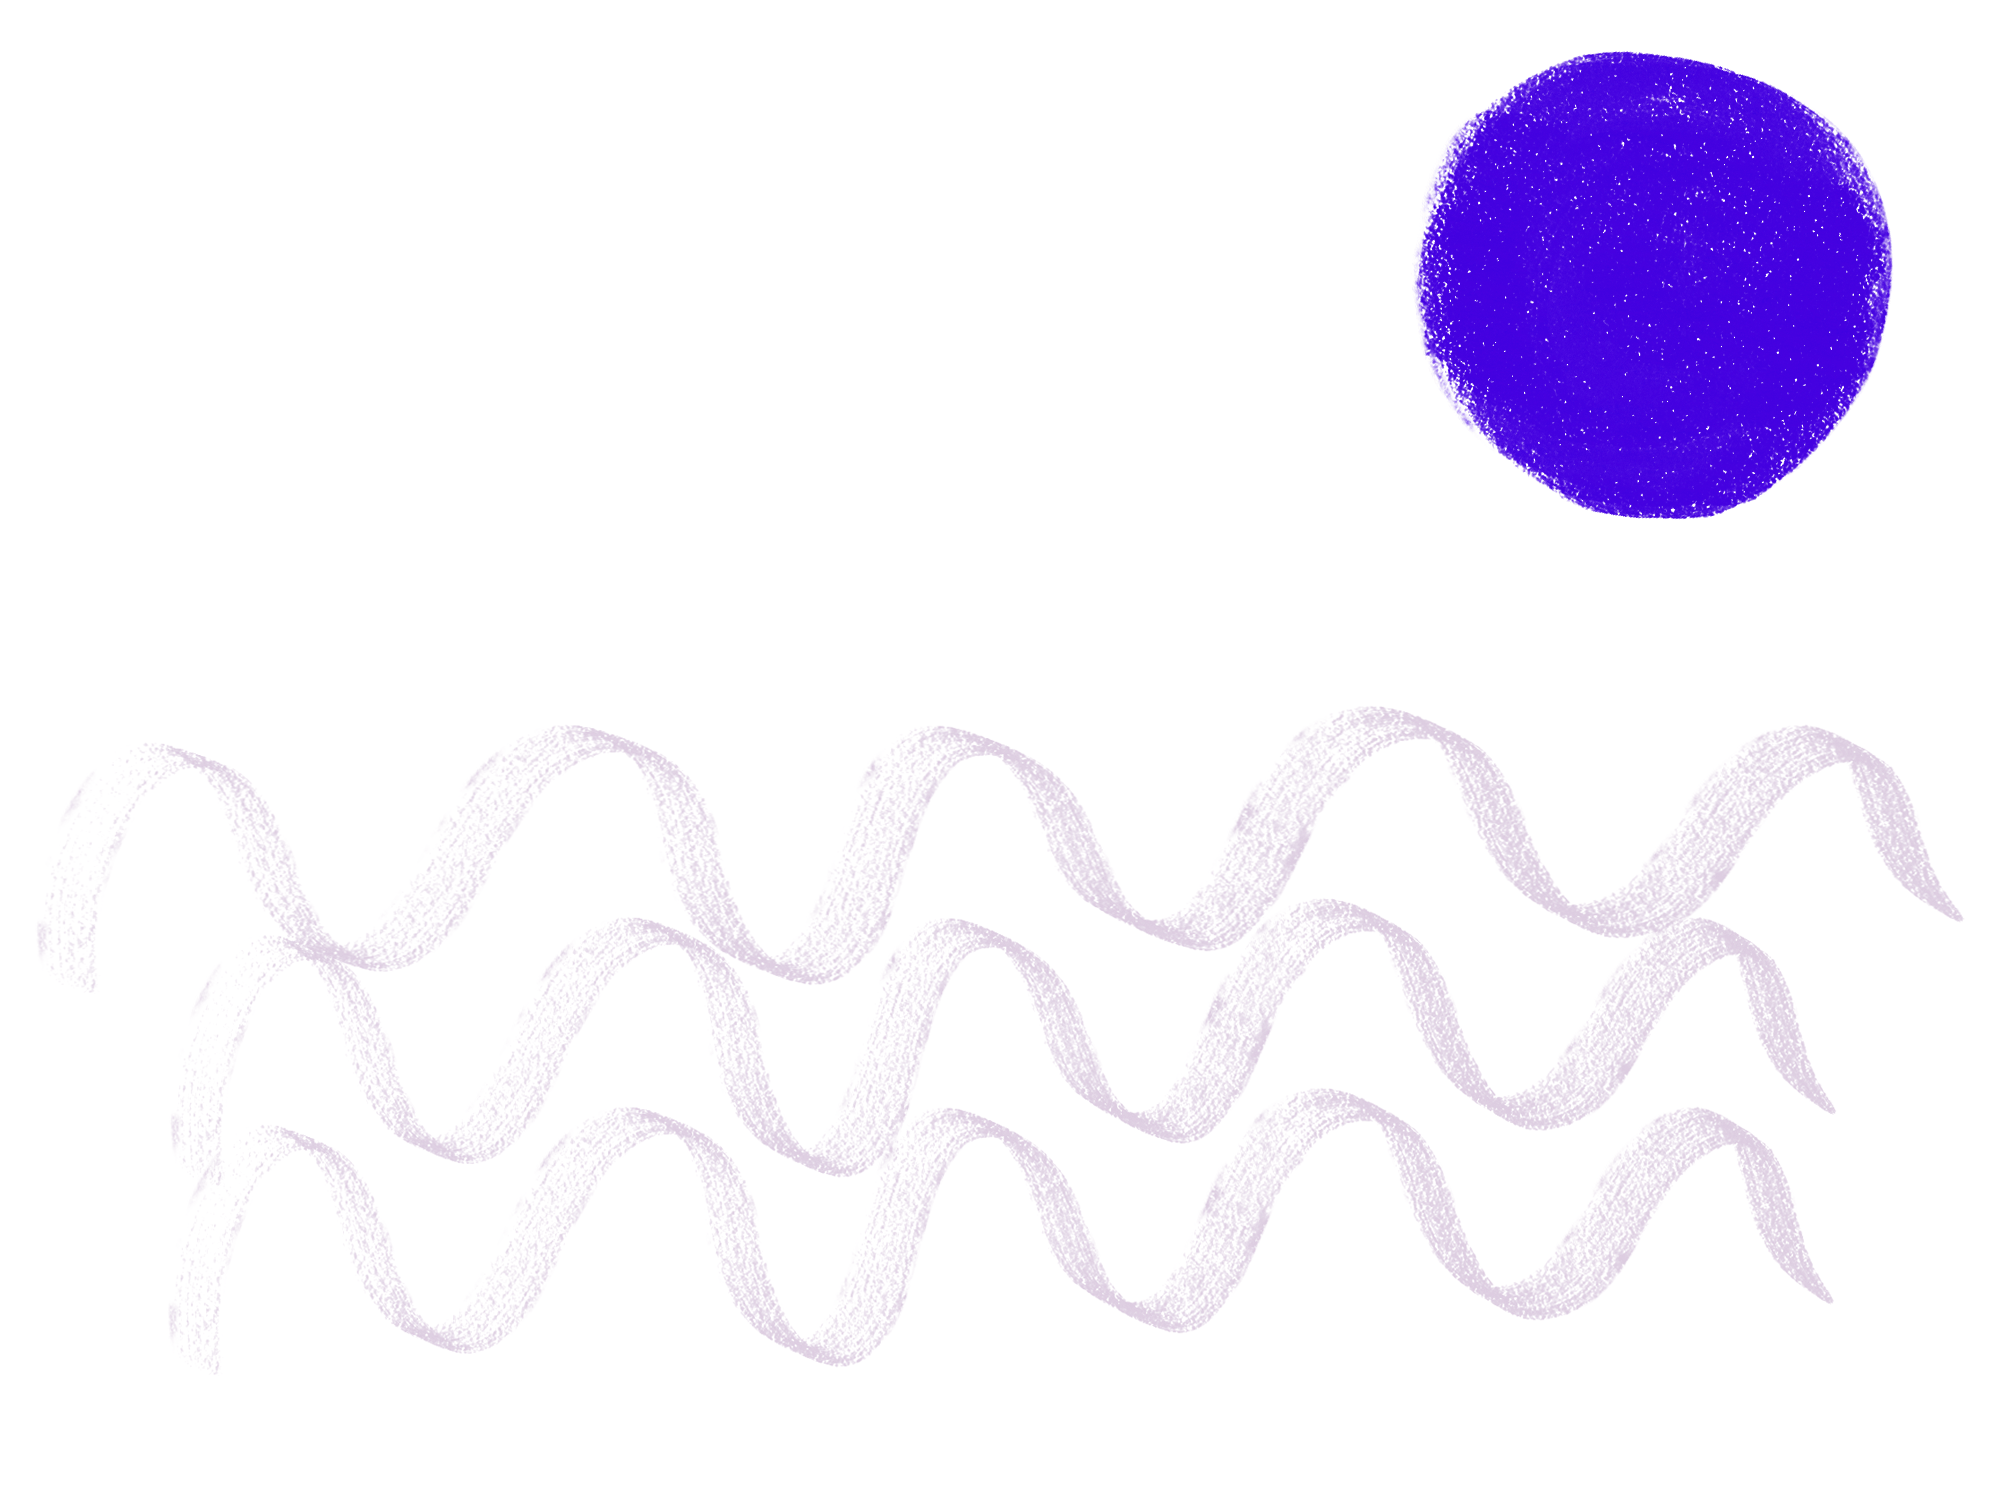 Ein bewegtes Bild, das den Flow darstellt. Es bewegen sich rosarote Wellen und oben rechts im Bild ist ein blauer runder Kreis, der sich dreht.